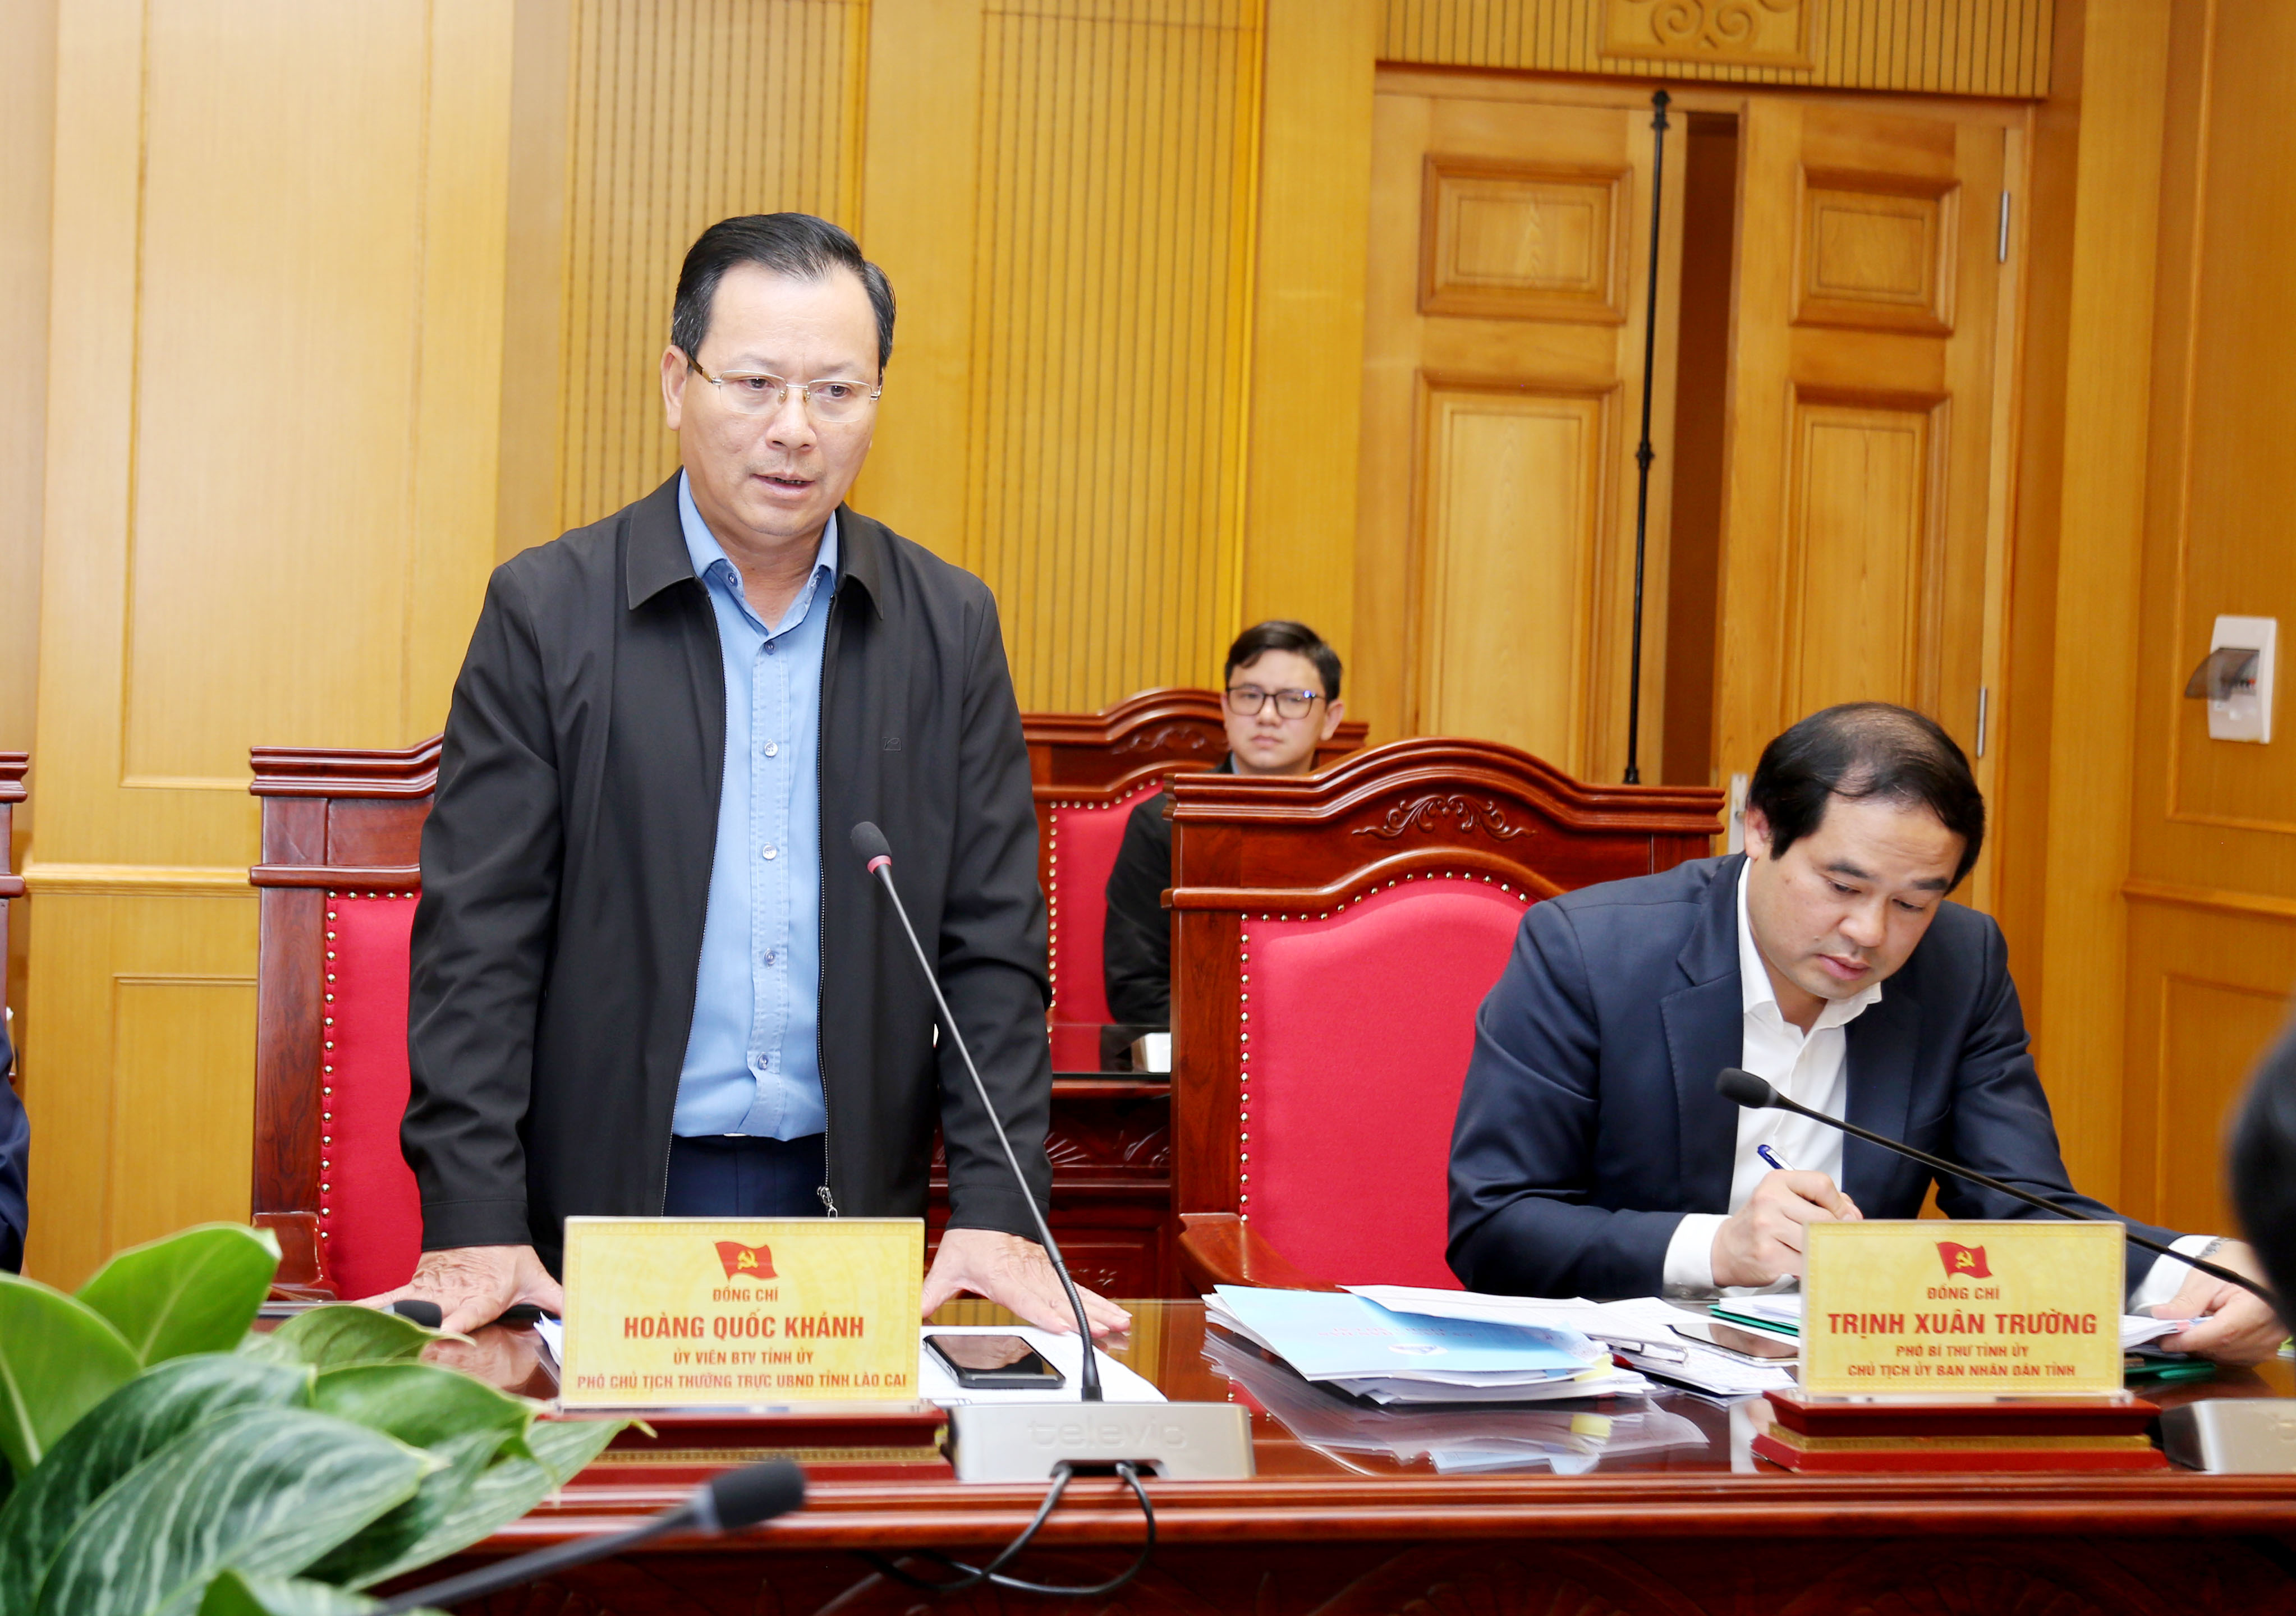 Phó chủ tịch Thường trực UBND tỉnh Hoàng Quốc Khánh nêu ý kiến về quy hoạch cửa khẩu.